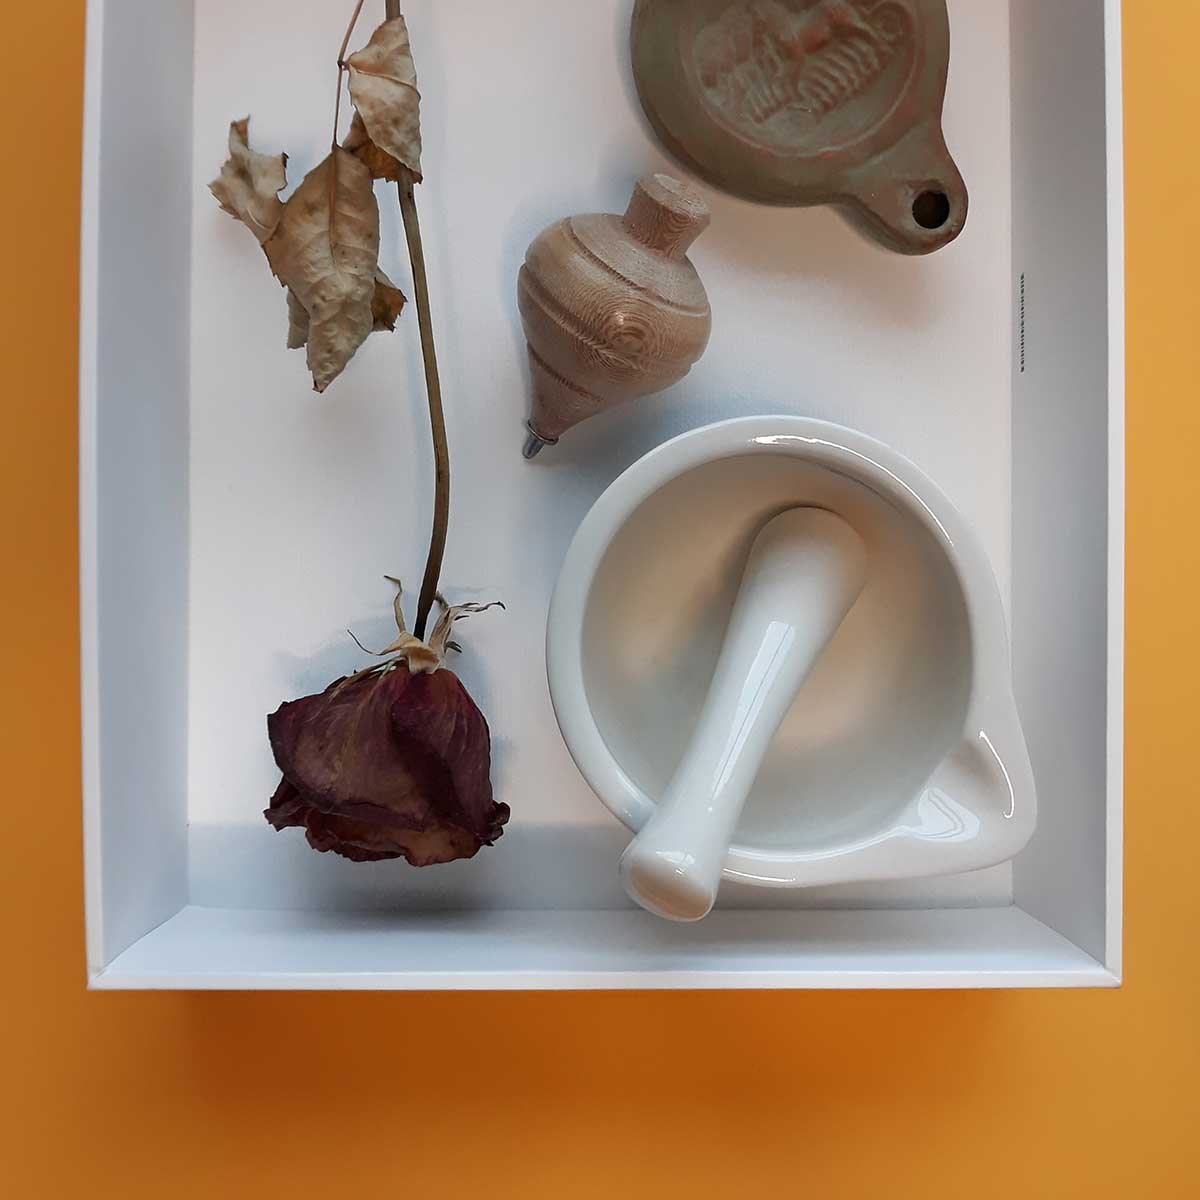 ACD - Caixa de artista - objetos que contam histórias - Arte Central